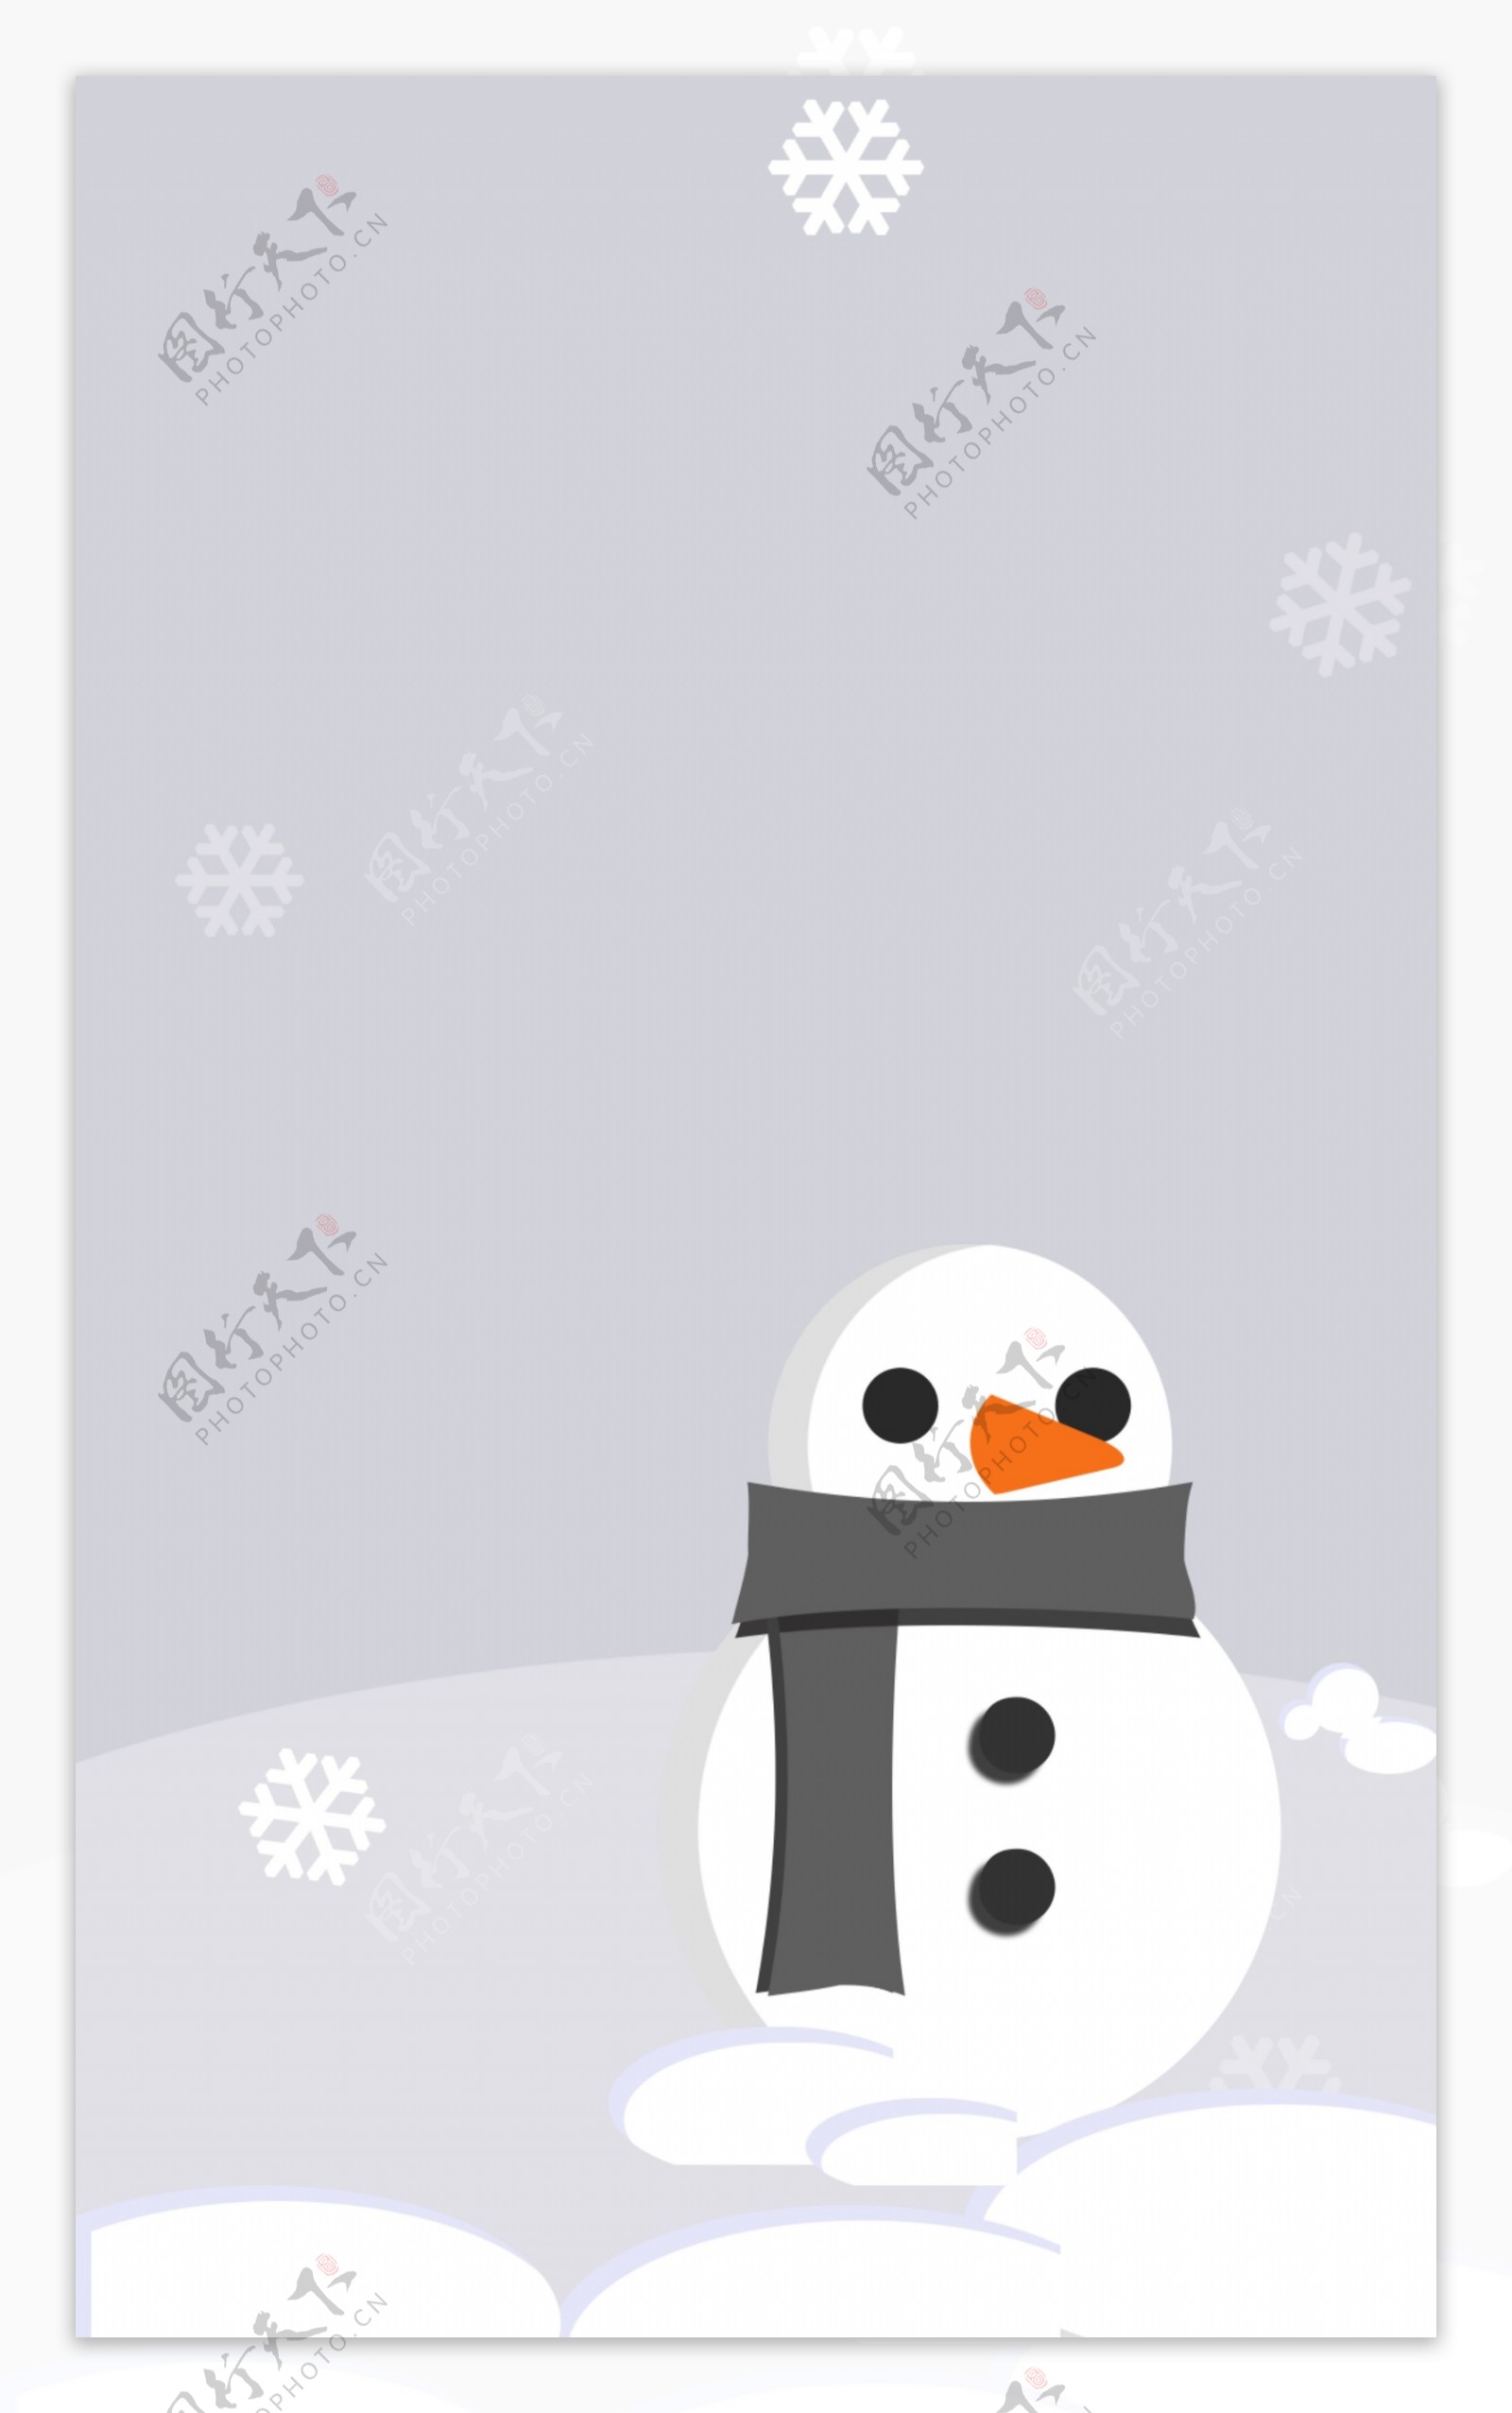 冬季雪山雪人背景设计